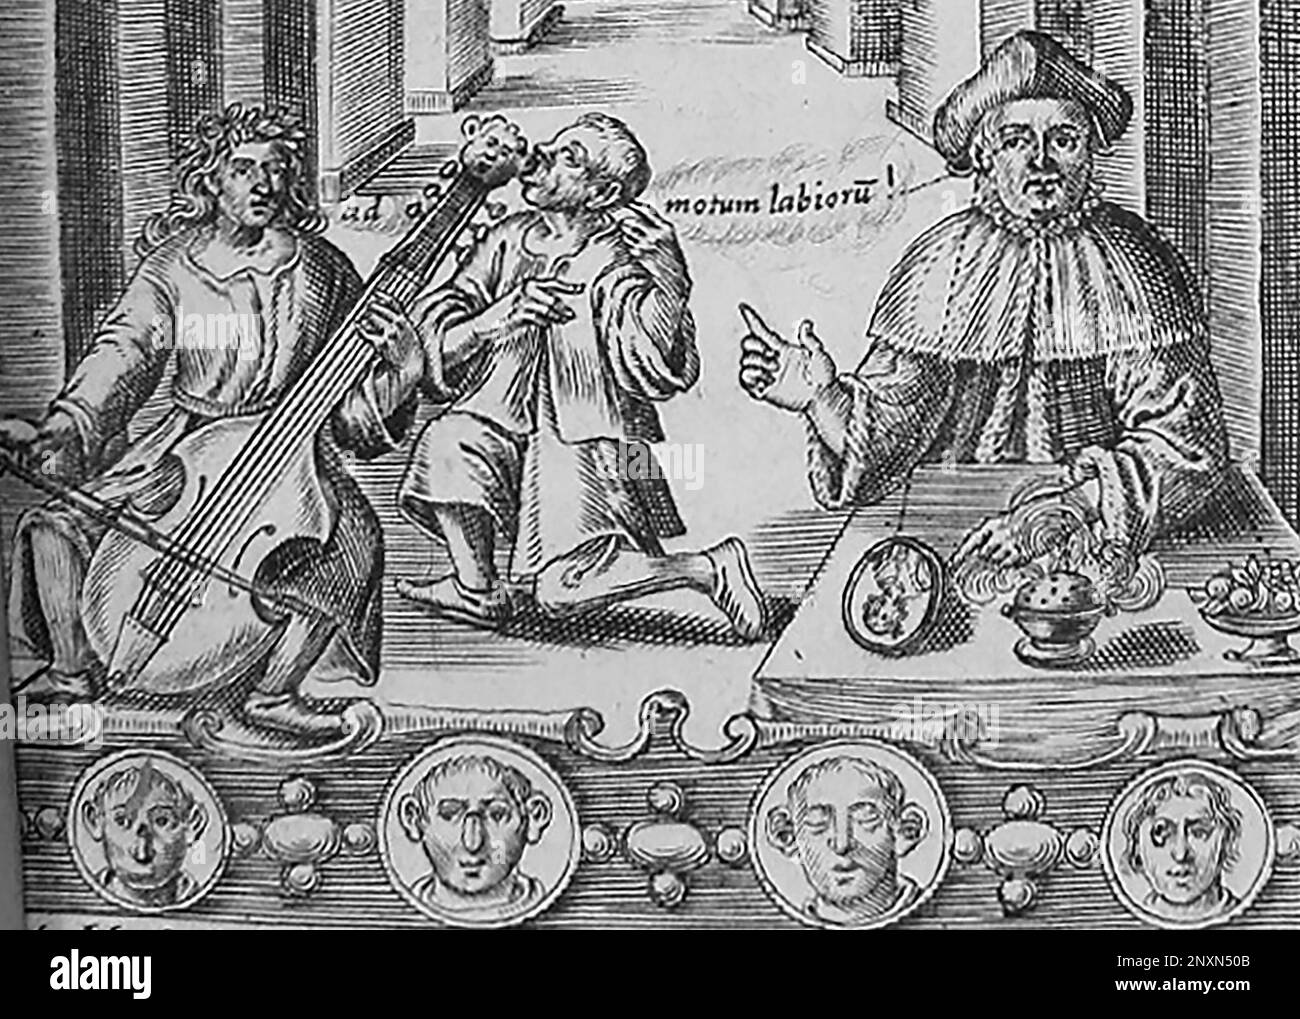 Detail des Frontispiekels aus John Bulwers Philocophus, veröffentlicht 1648, zeigt einen gehörlosen Mann, der Musik durch Knochenleitung durch die Zähne hört. John Bulwer (1606-1656) war ein englischer Arzt und Philosoph, der fünf Werke zur Erforschung des Körpers und der menschlichen Kommunikation schrieb, darunter Chirologia (1644) und Philocophus (1648). Er war der erste in England, der vorschlug, Gehörlose auszubilden. Die in Chirologia beschriebenen Handformen werden weiterhin in der britischen Gebärdensprache verwendet. Stockfoto